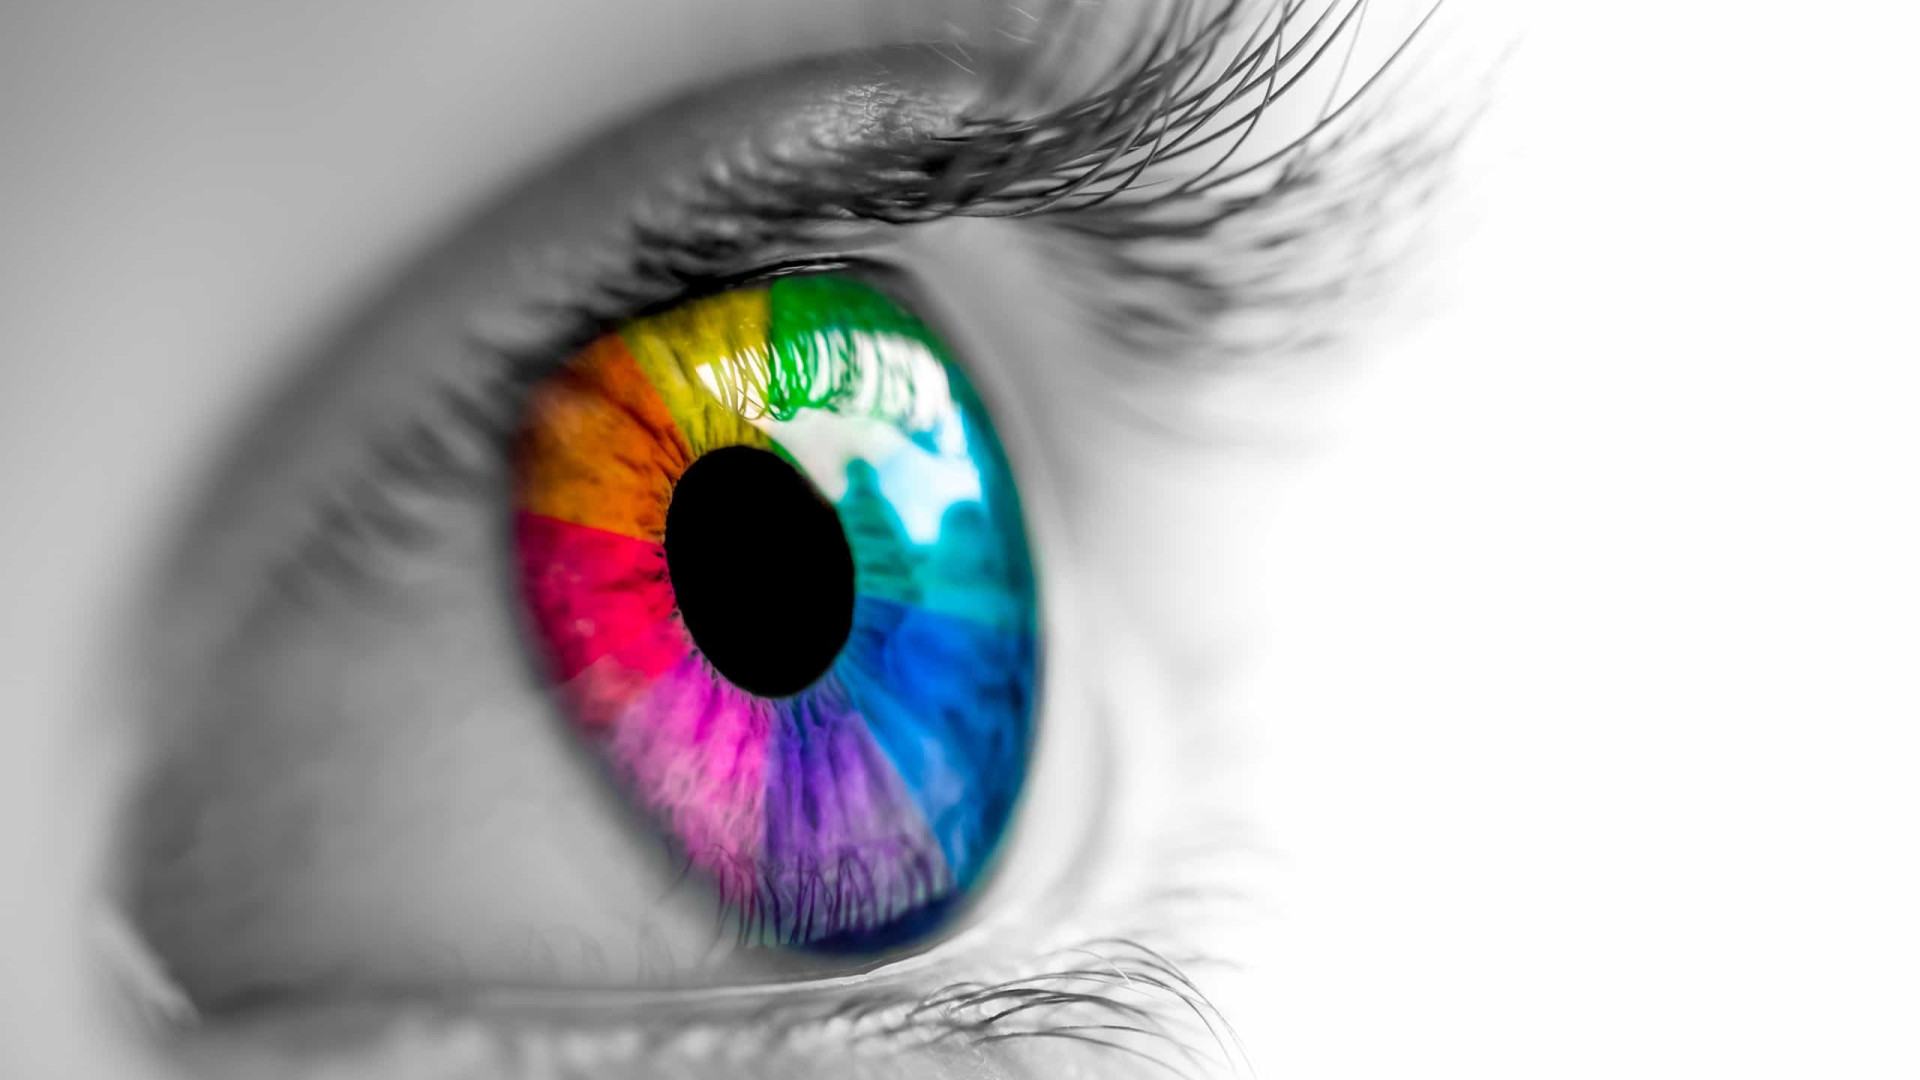 Como os olhos de adultos mudam de cor (spoiler: pode não ser um bom sinal!)